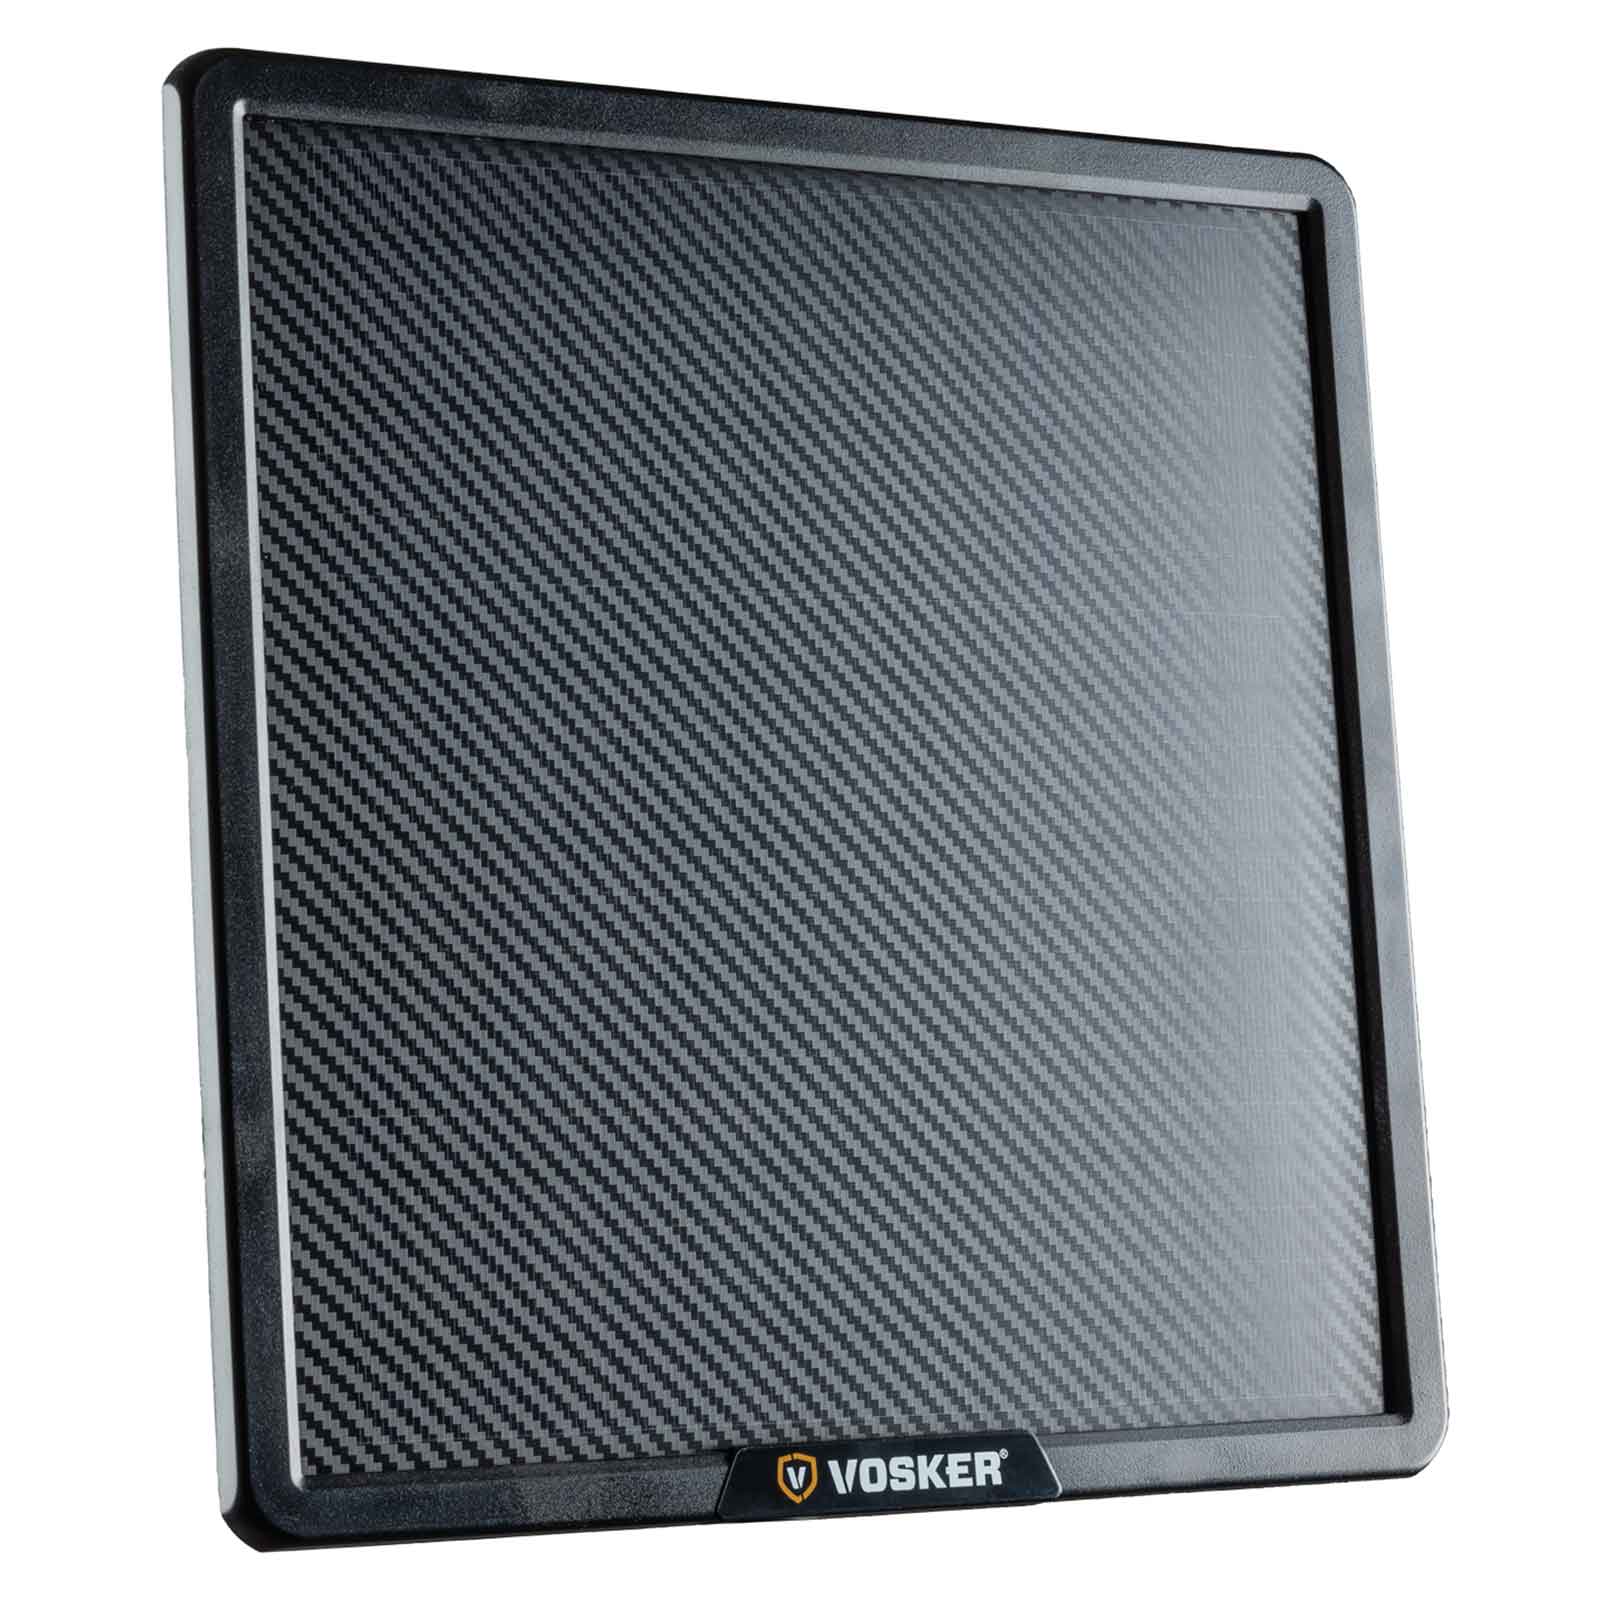 Vosker Pannello solare 10 W con batteria al litio integrata